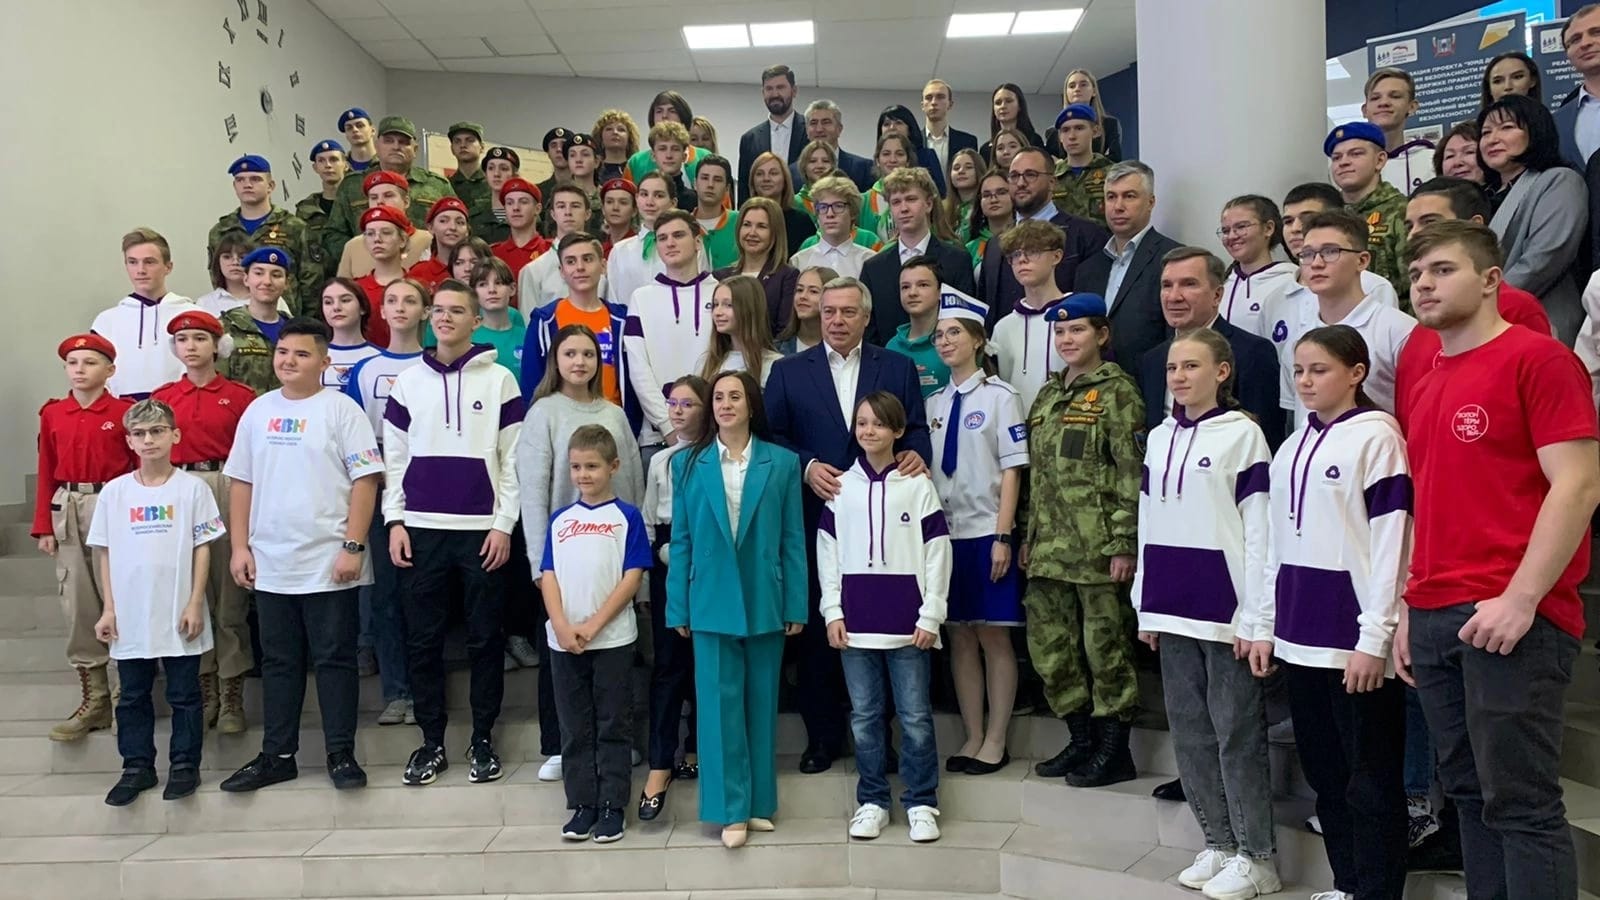 Учреждения образования ростовской области